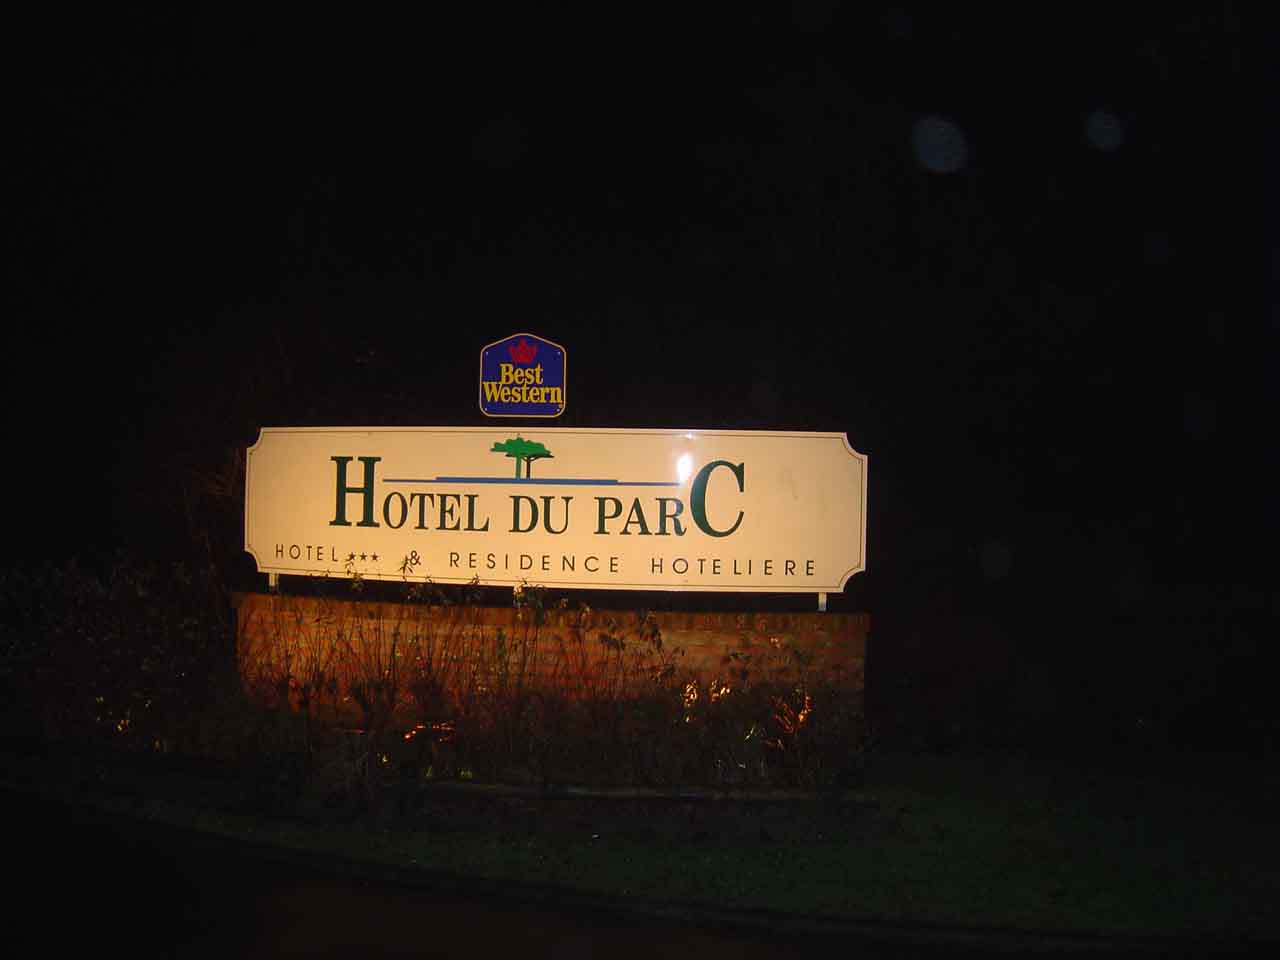 Hotel du parc nuit lumiere